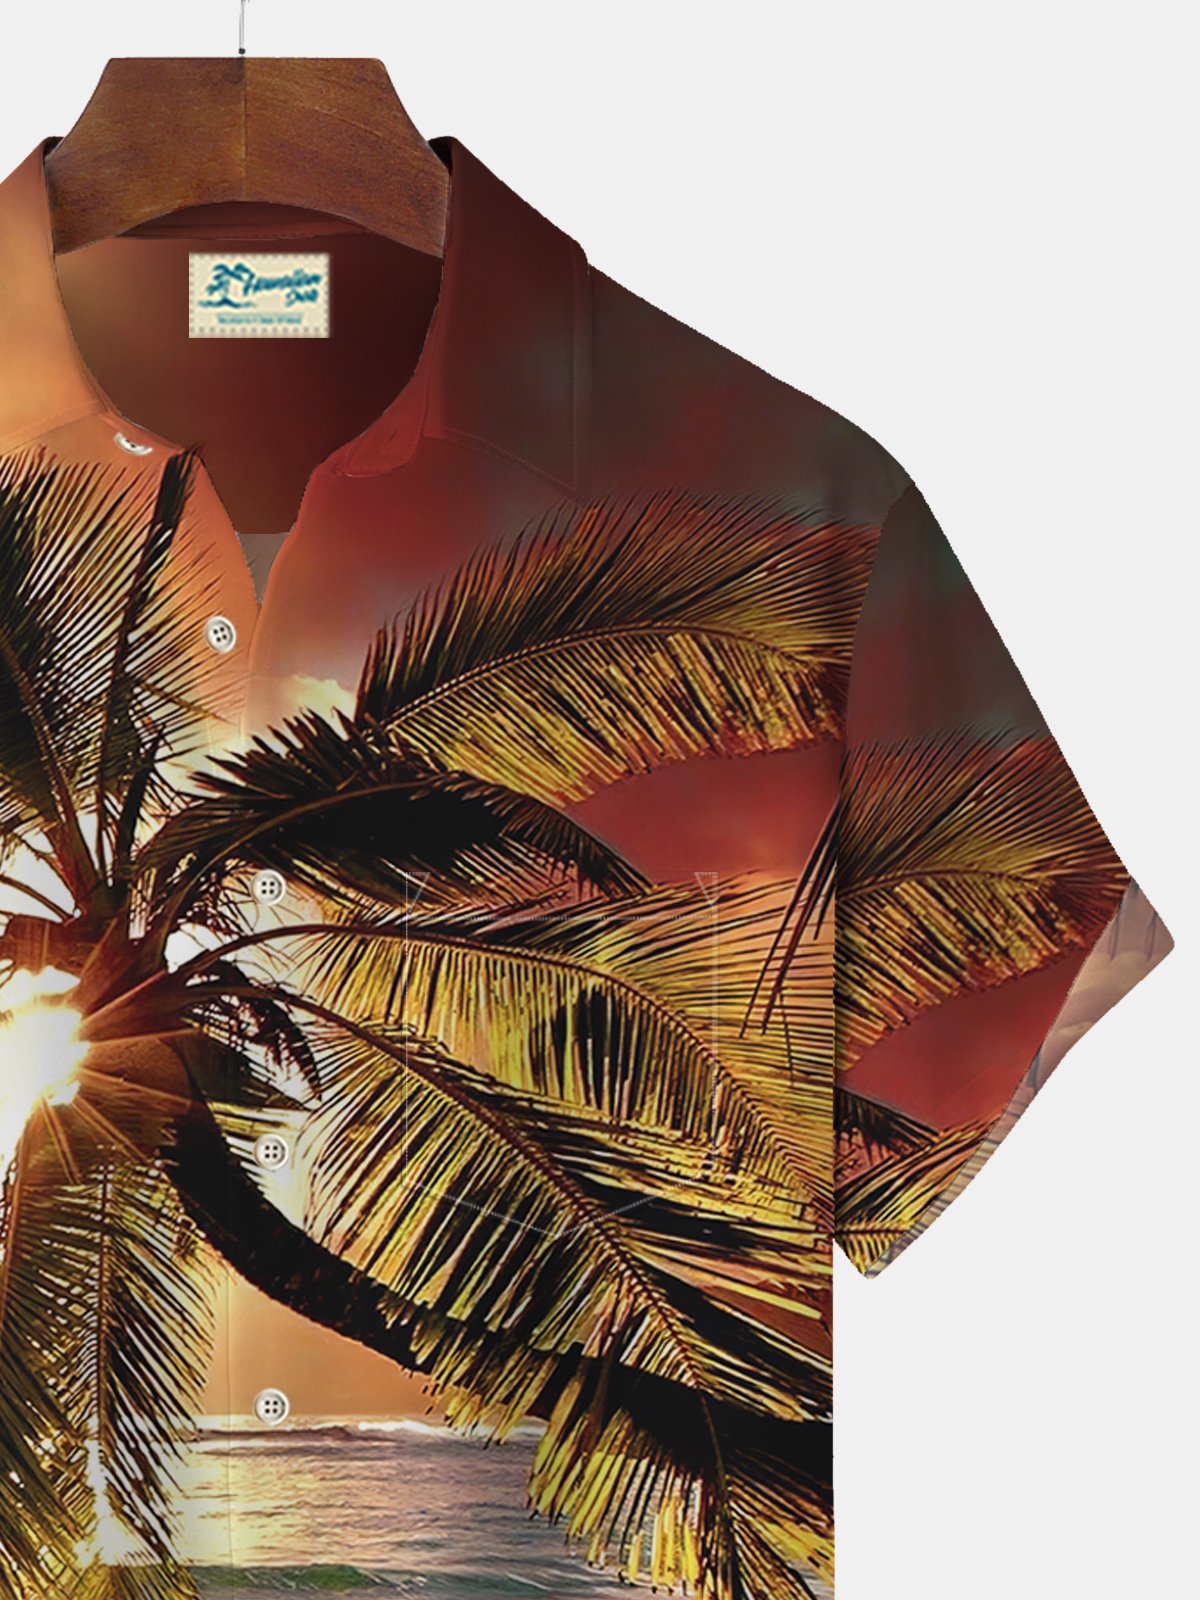 Royaura Sunset Beach Coconut Tree Print Beach Men's Hawaiian Oversized Shirt with Pockets